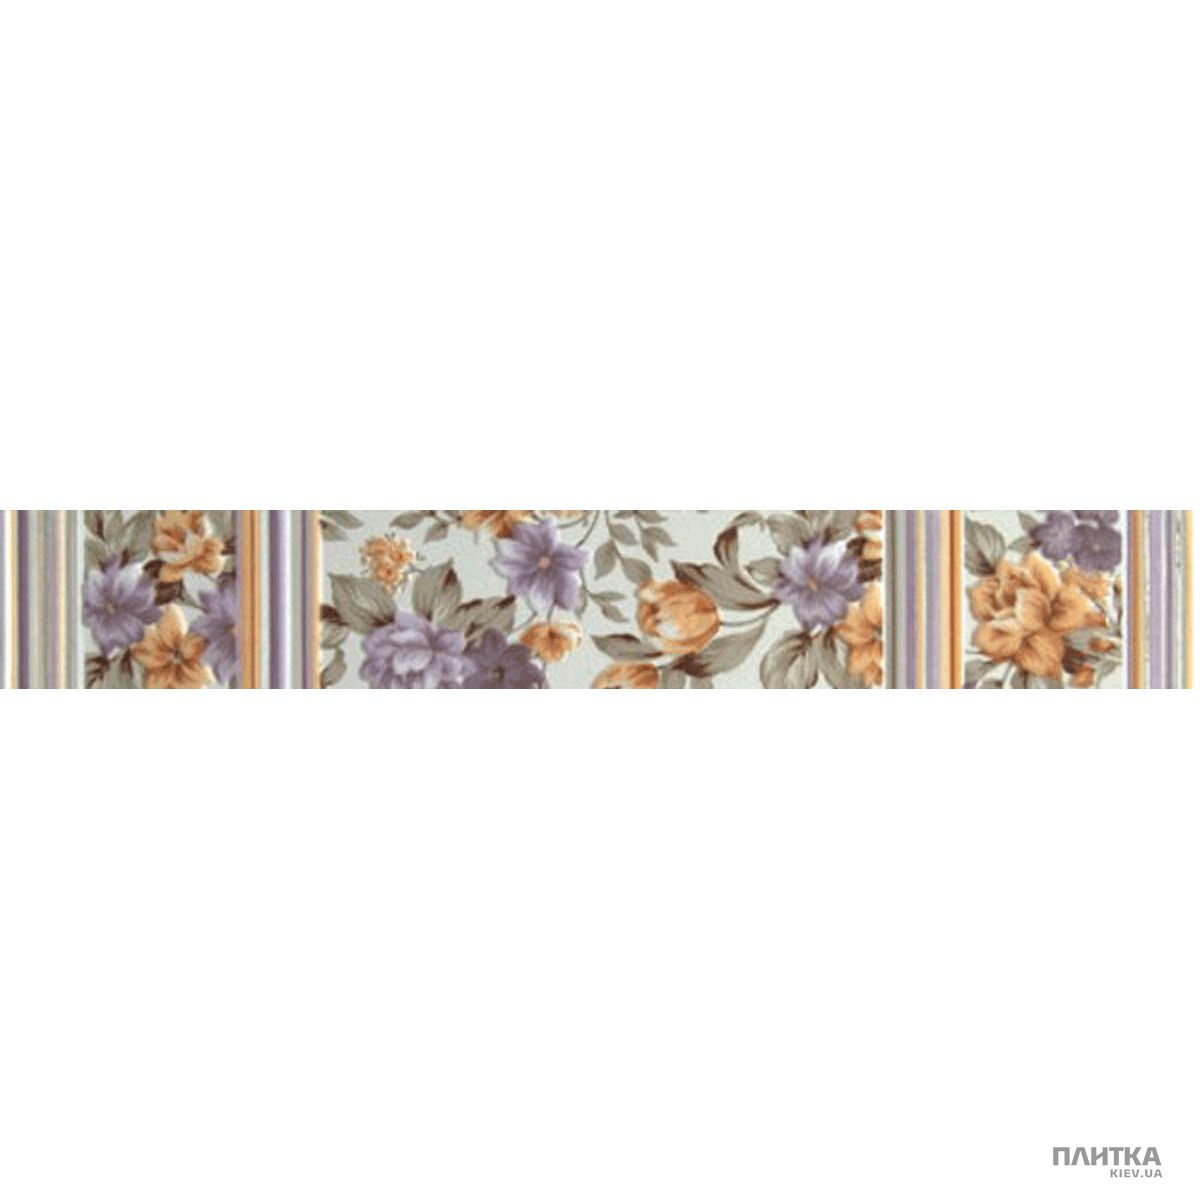 Плитка Lasselsberger-Rako Easy WLANA066 EASY FLOWER фриз сиреневый,белый,бежевый,зеленый,оранжевый